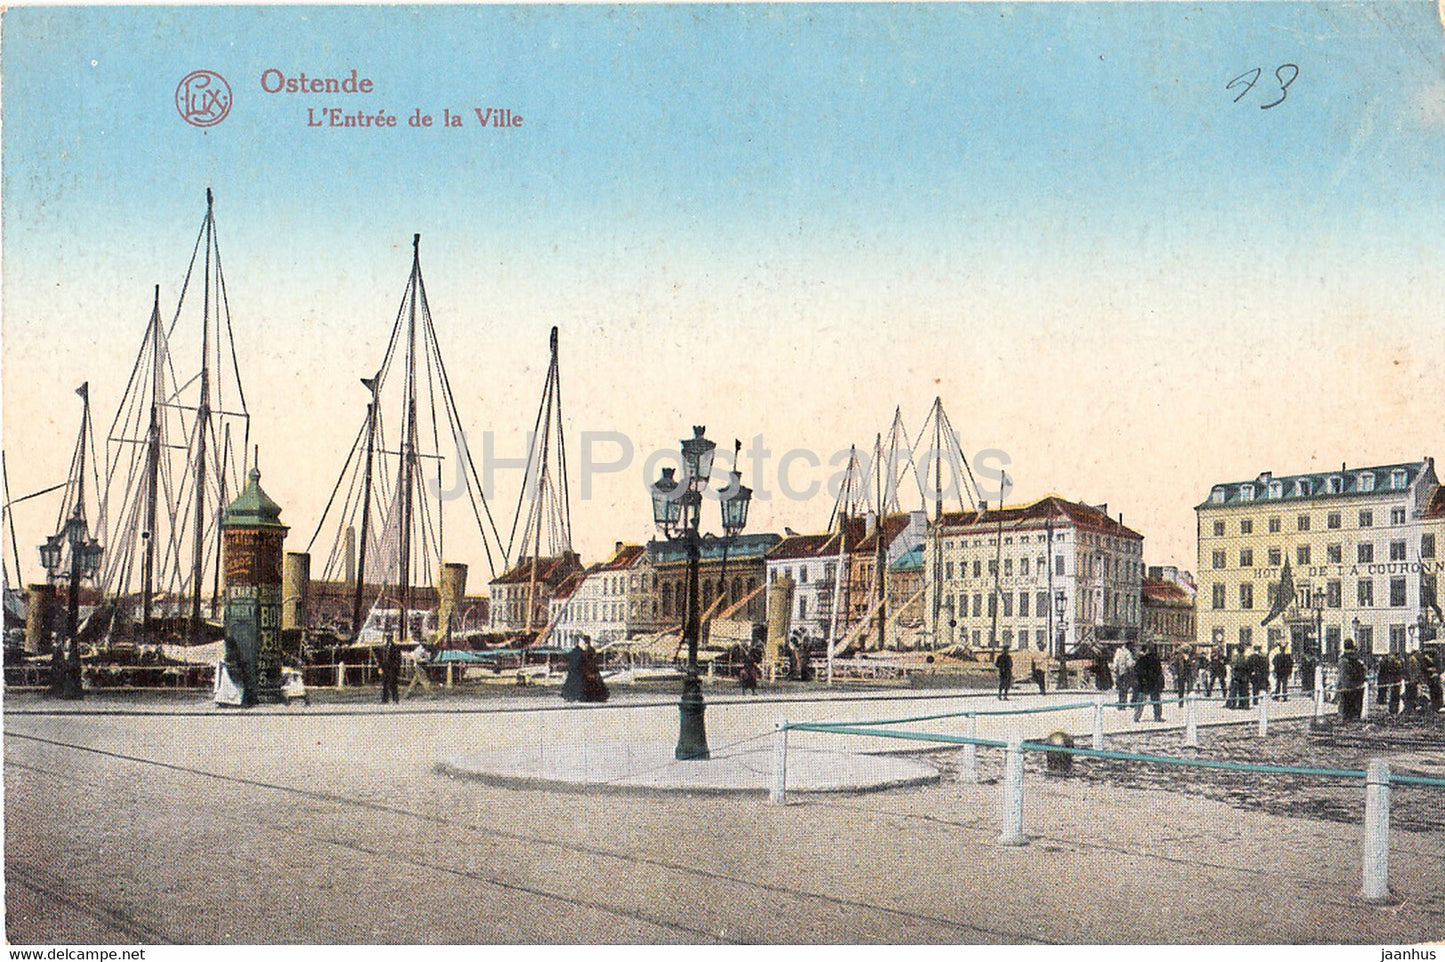 Ostende - Oostende - L'Entree de la Ville - ship - old postcard - Belgium - unused - JH Postcards